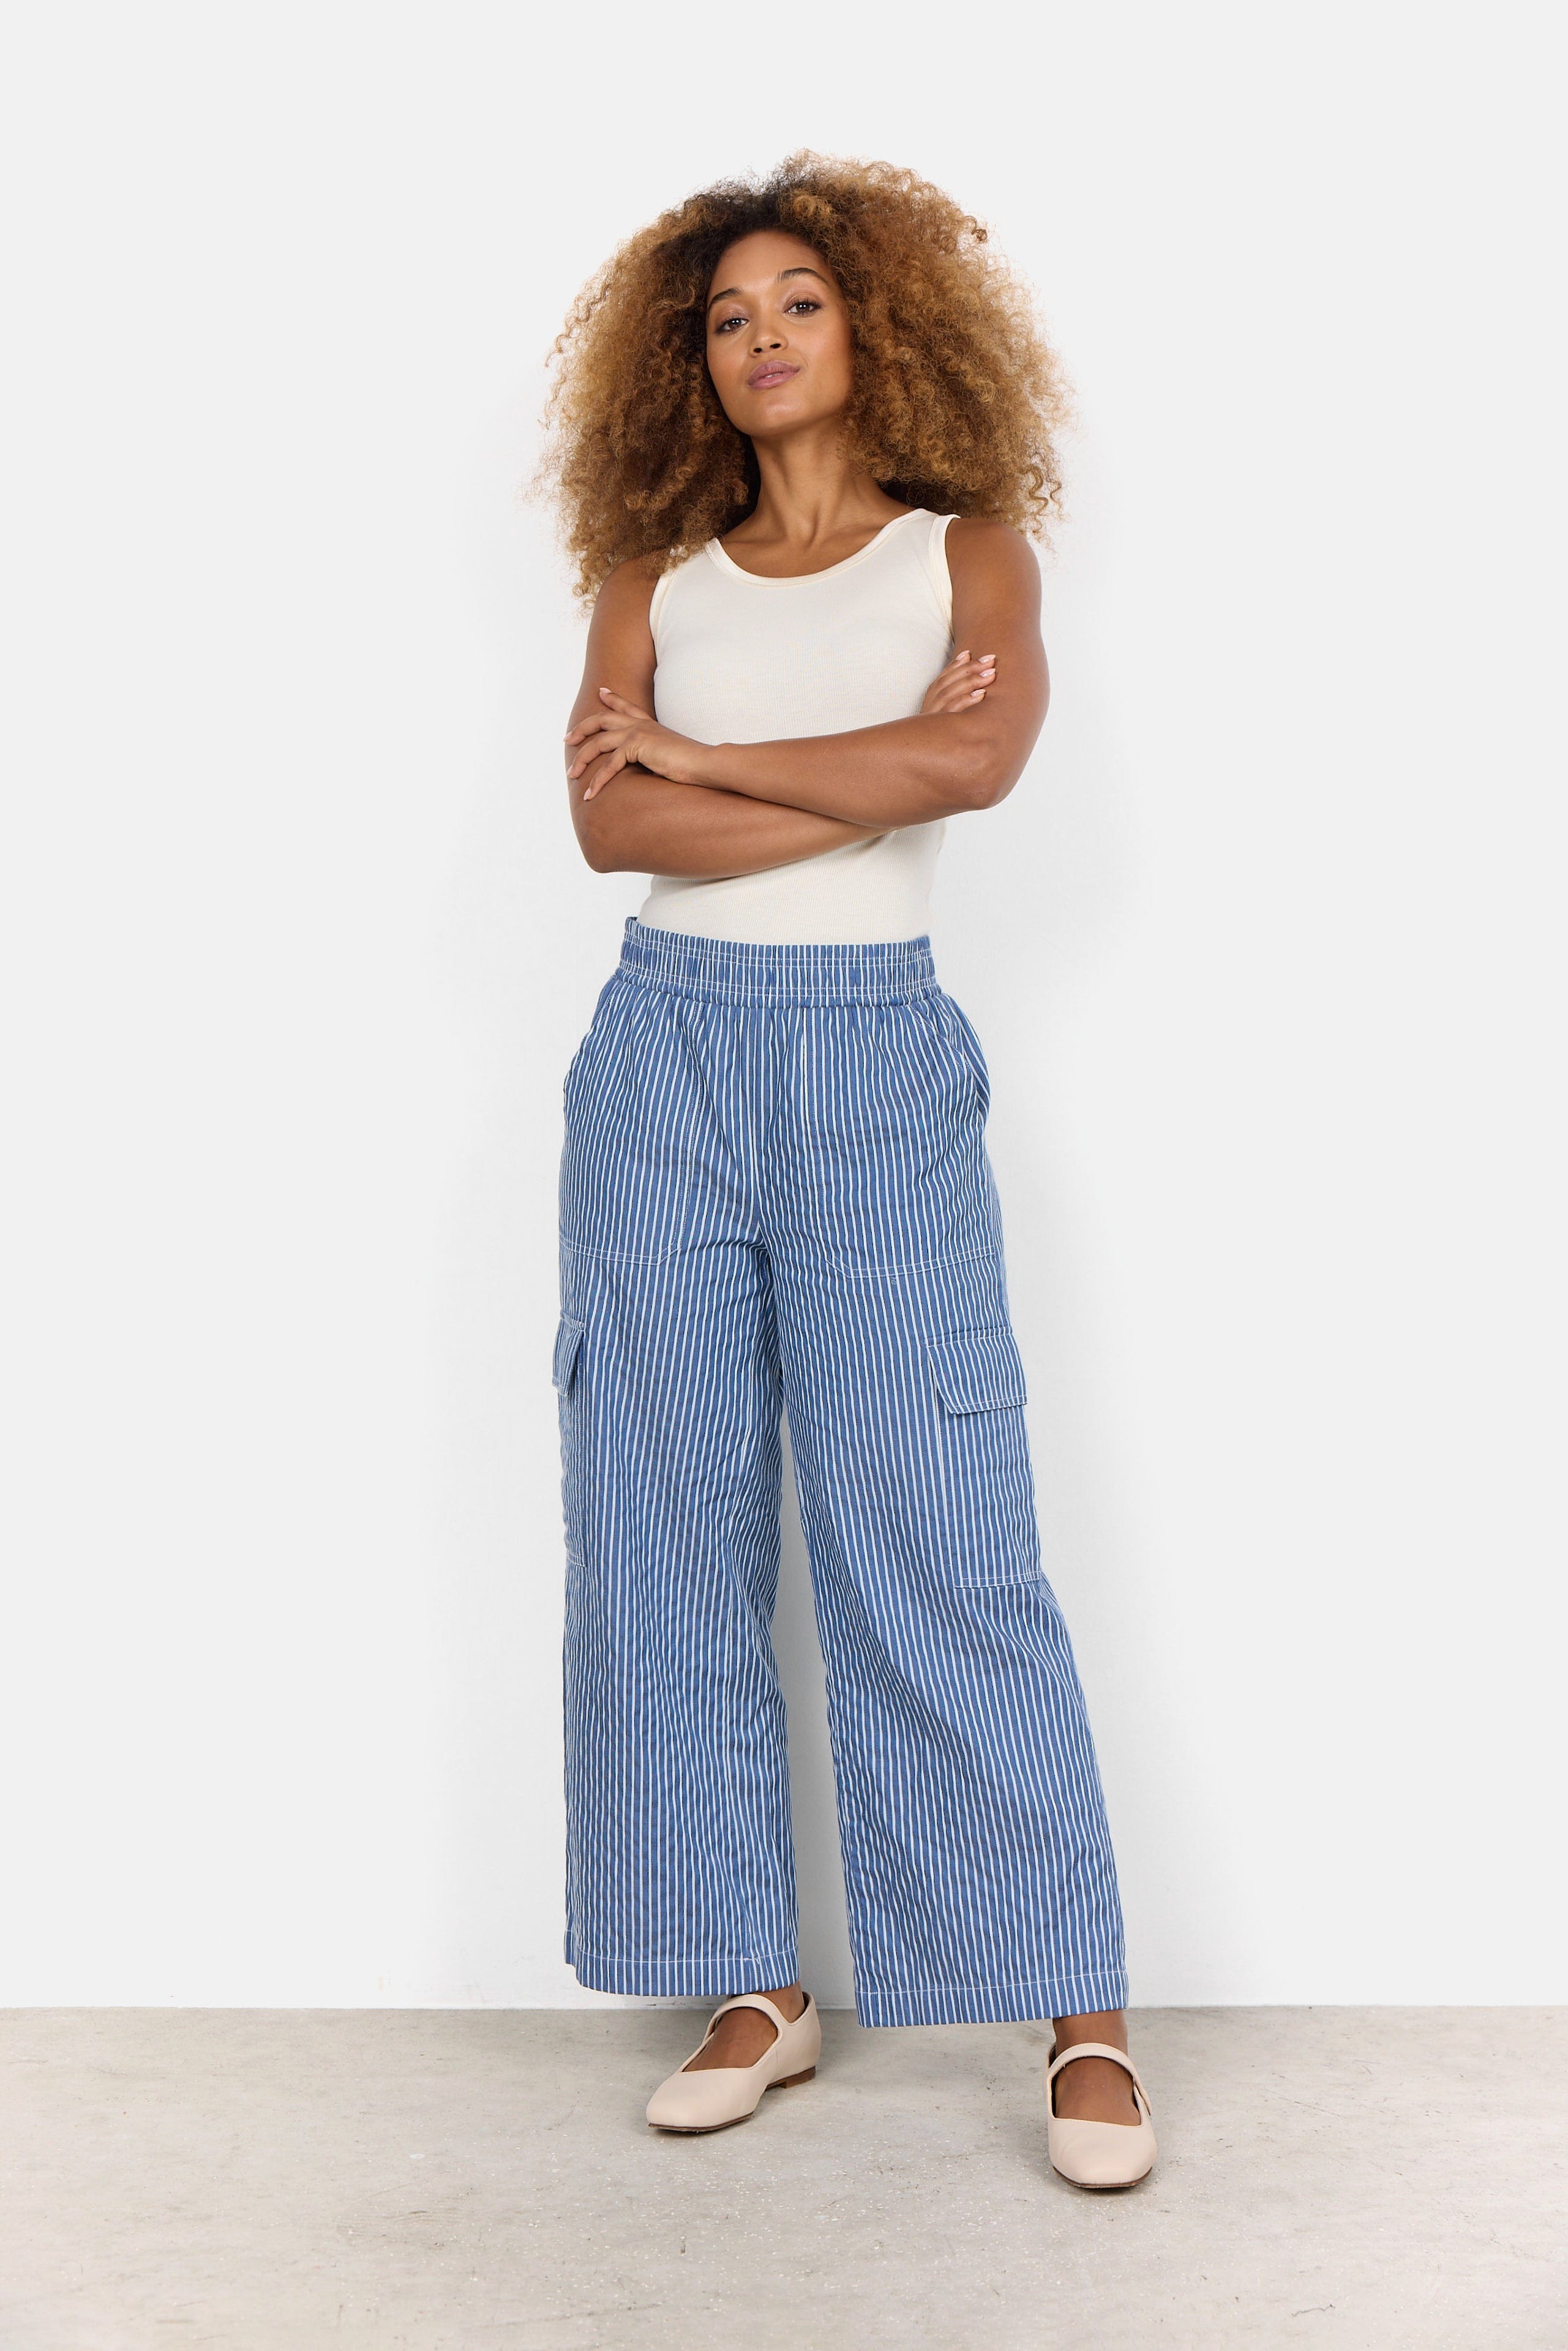 Latest 2022 Trouser Design For Girls | New Trousers | Capri Pants | Trouser  Bottom Designs - YouTube